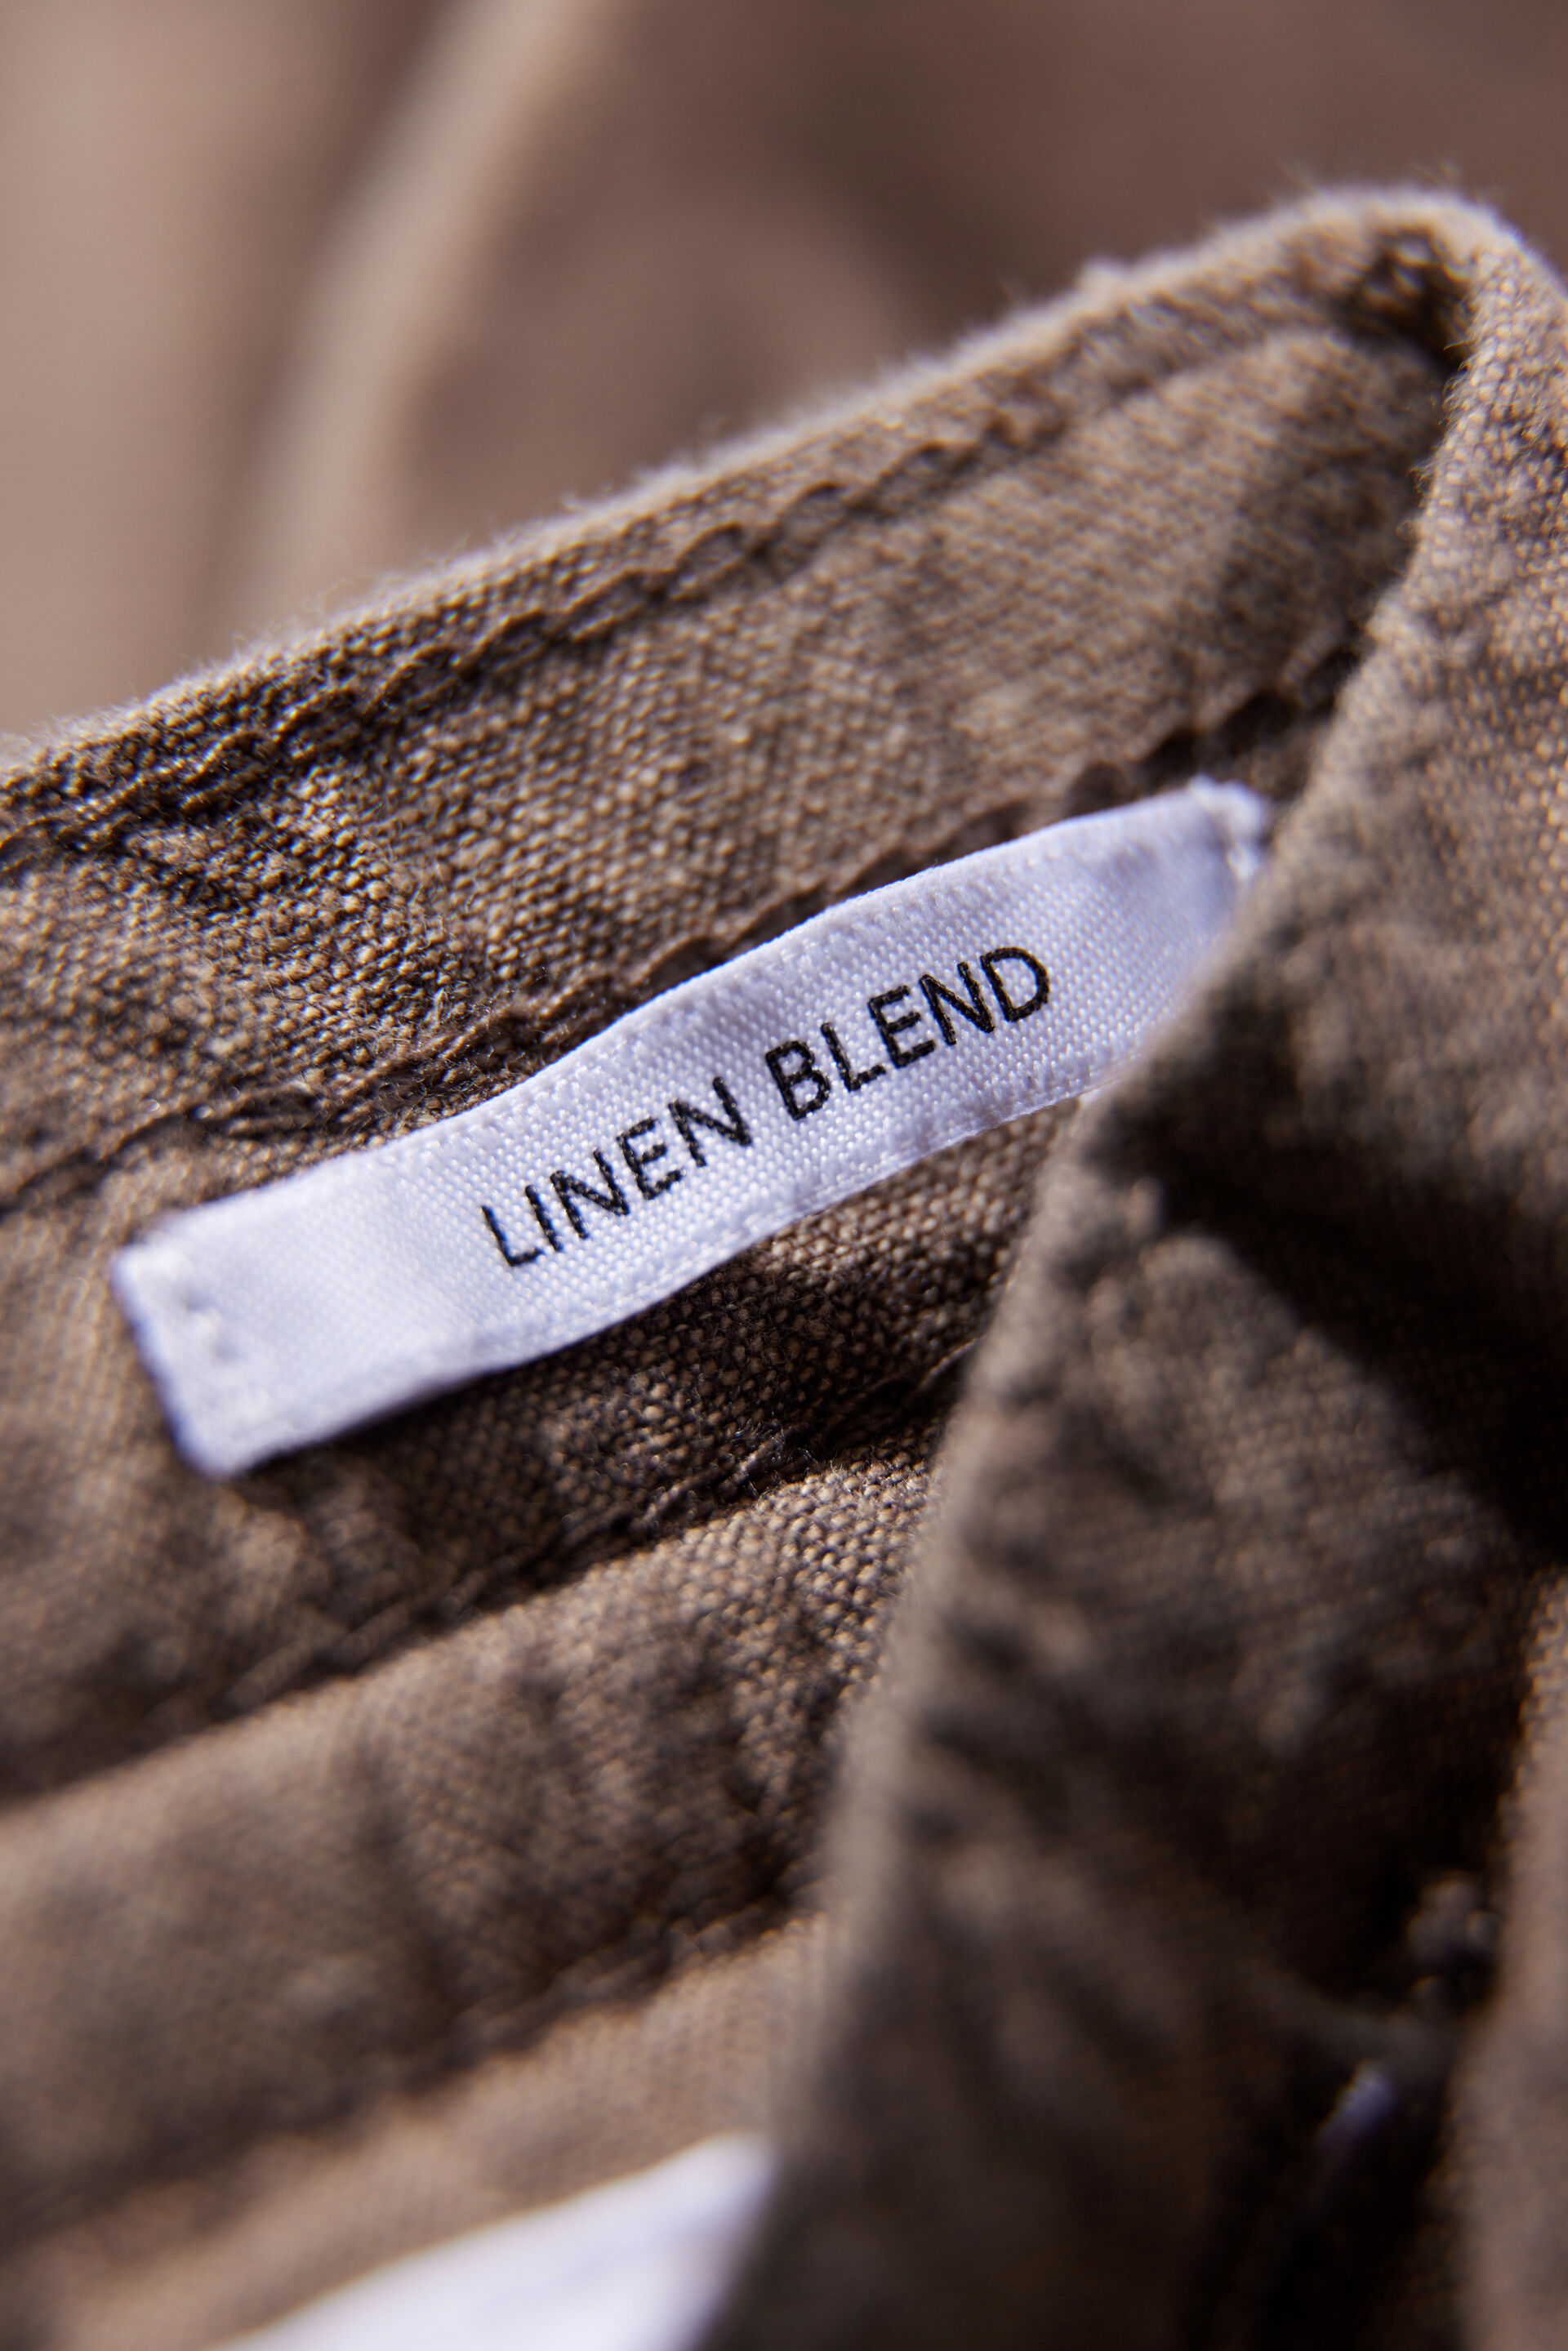 Linen shorts 30-508003